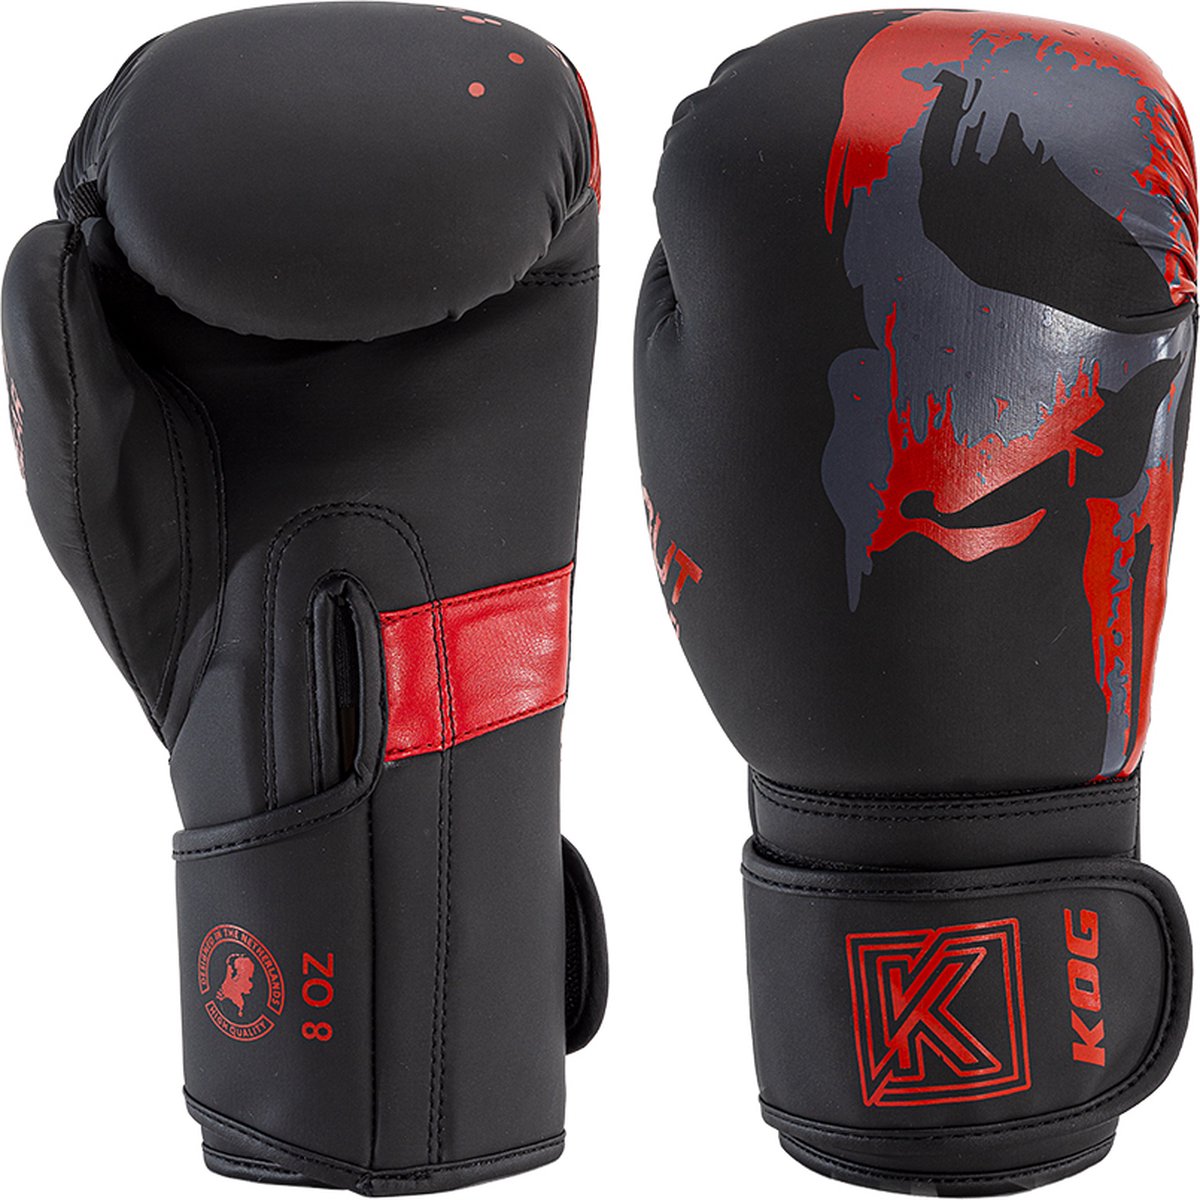 Knockout Gear Bokshandschoenen - Zwart/Rood - 14 oz